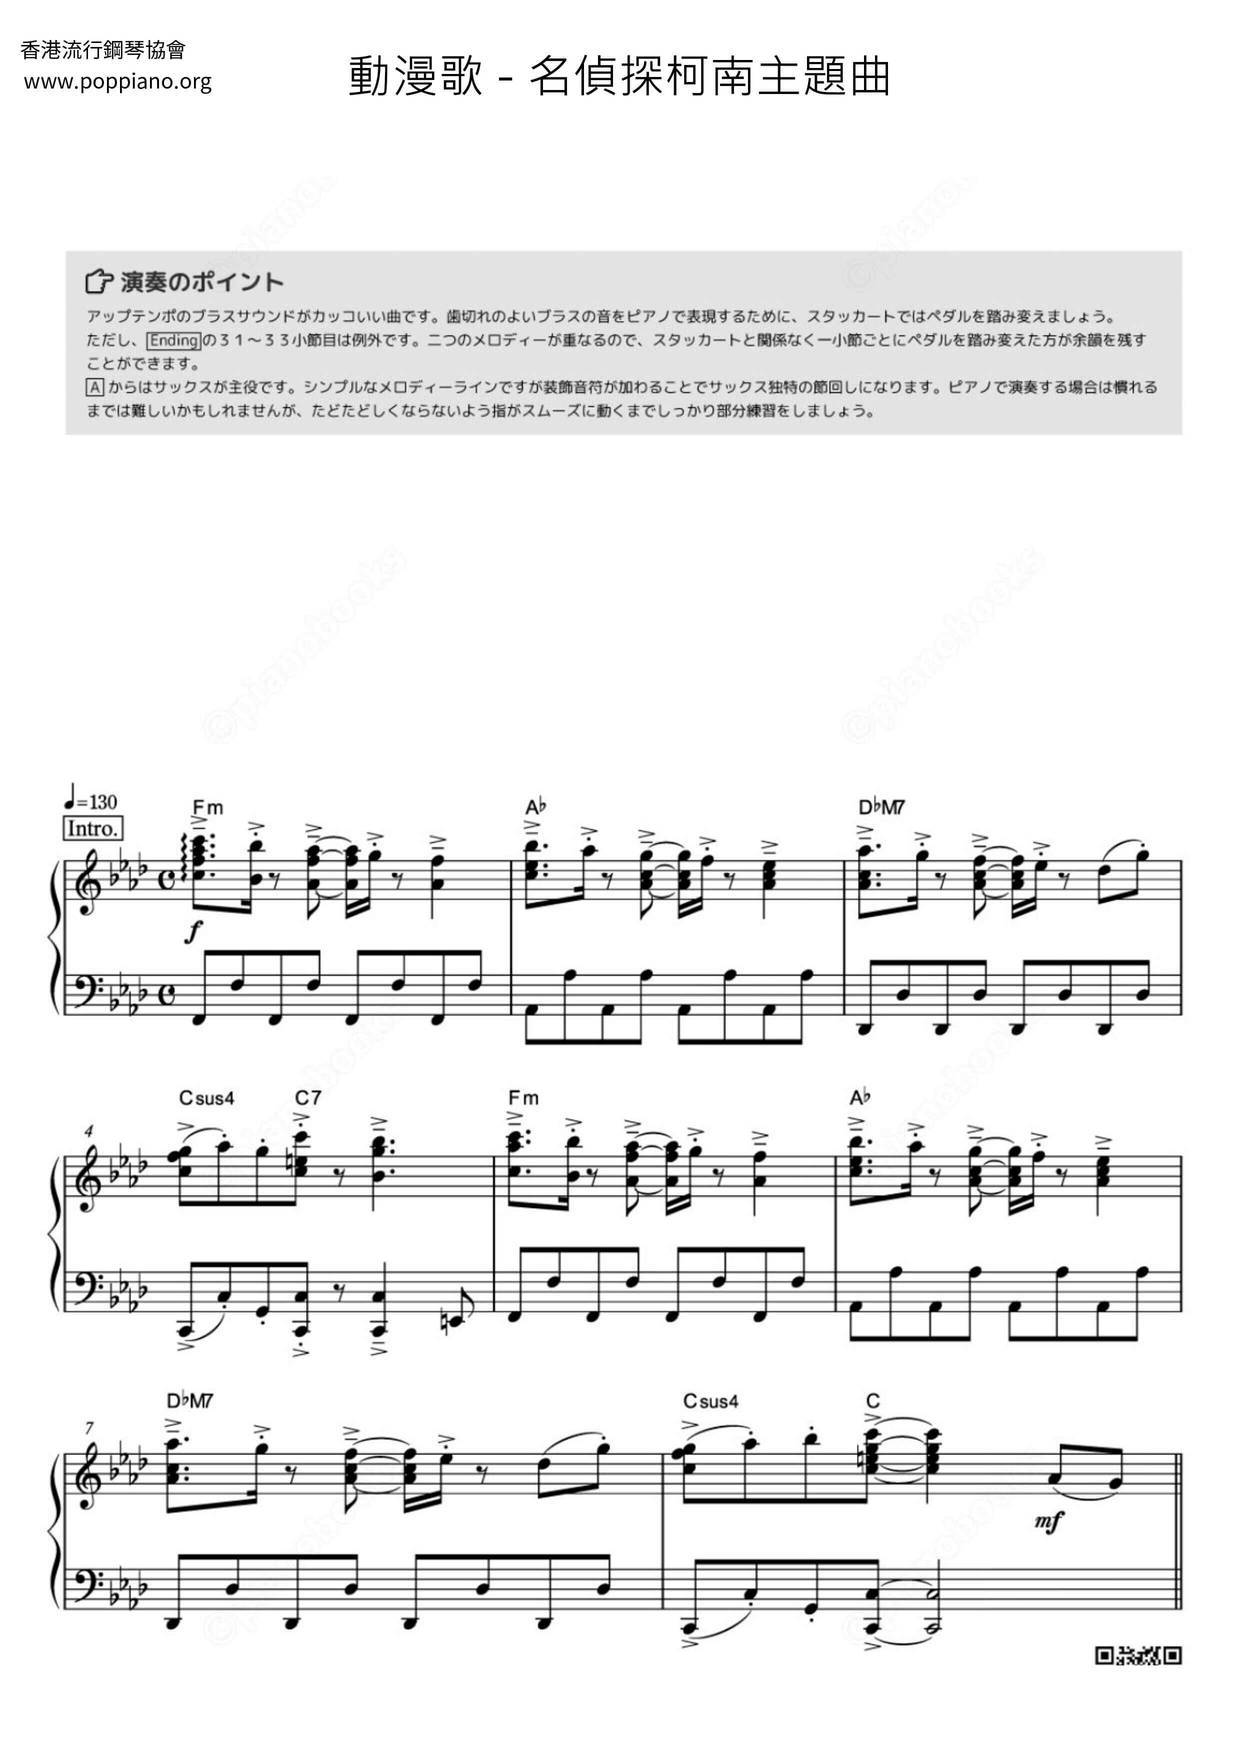 名偵探柯南主題曲 Pdf無料ピアノ譜 Gakufu 香港ポップピアノ協会